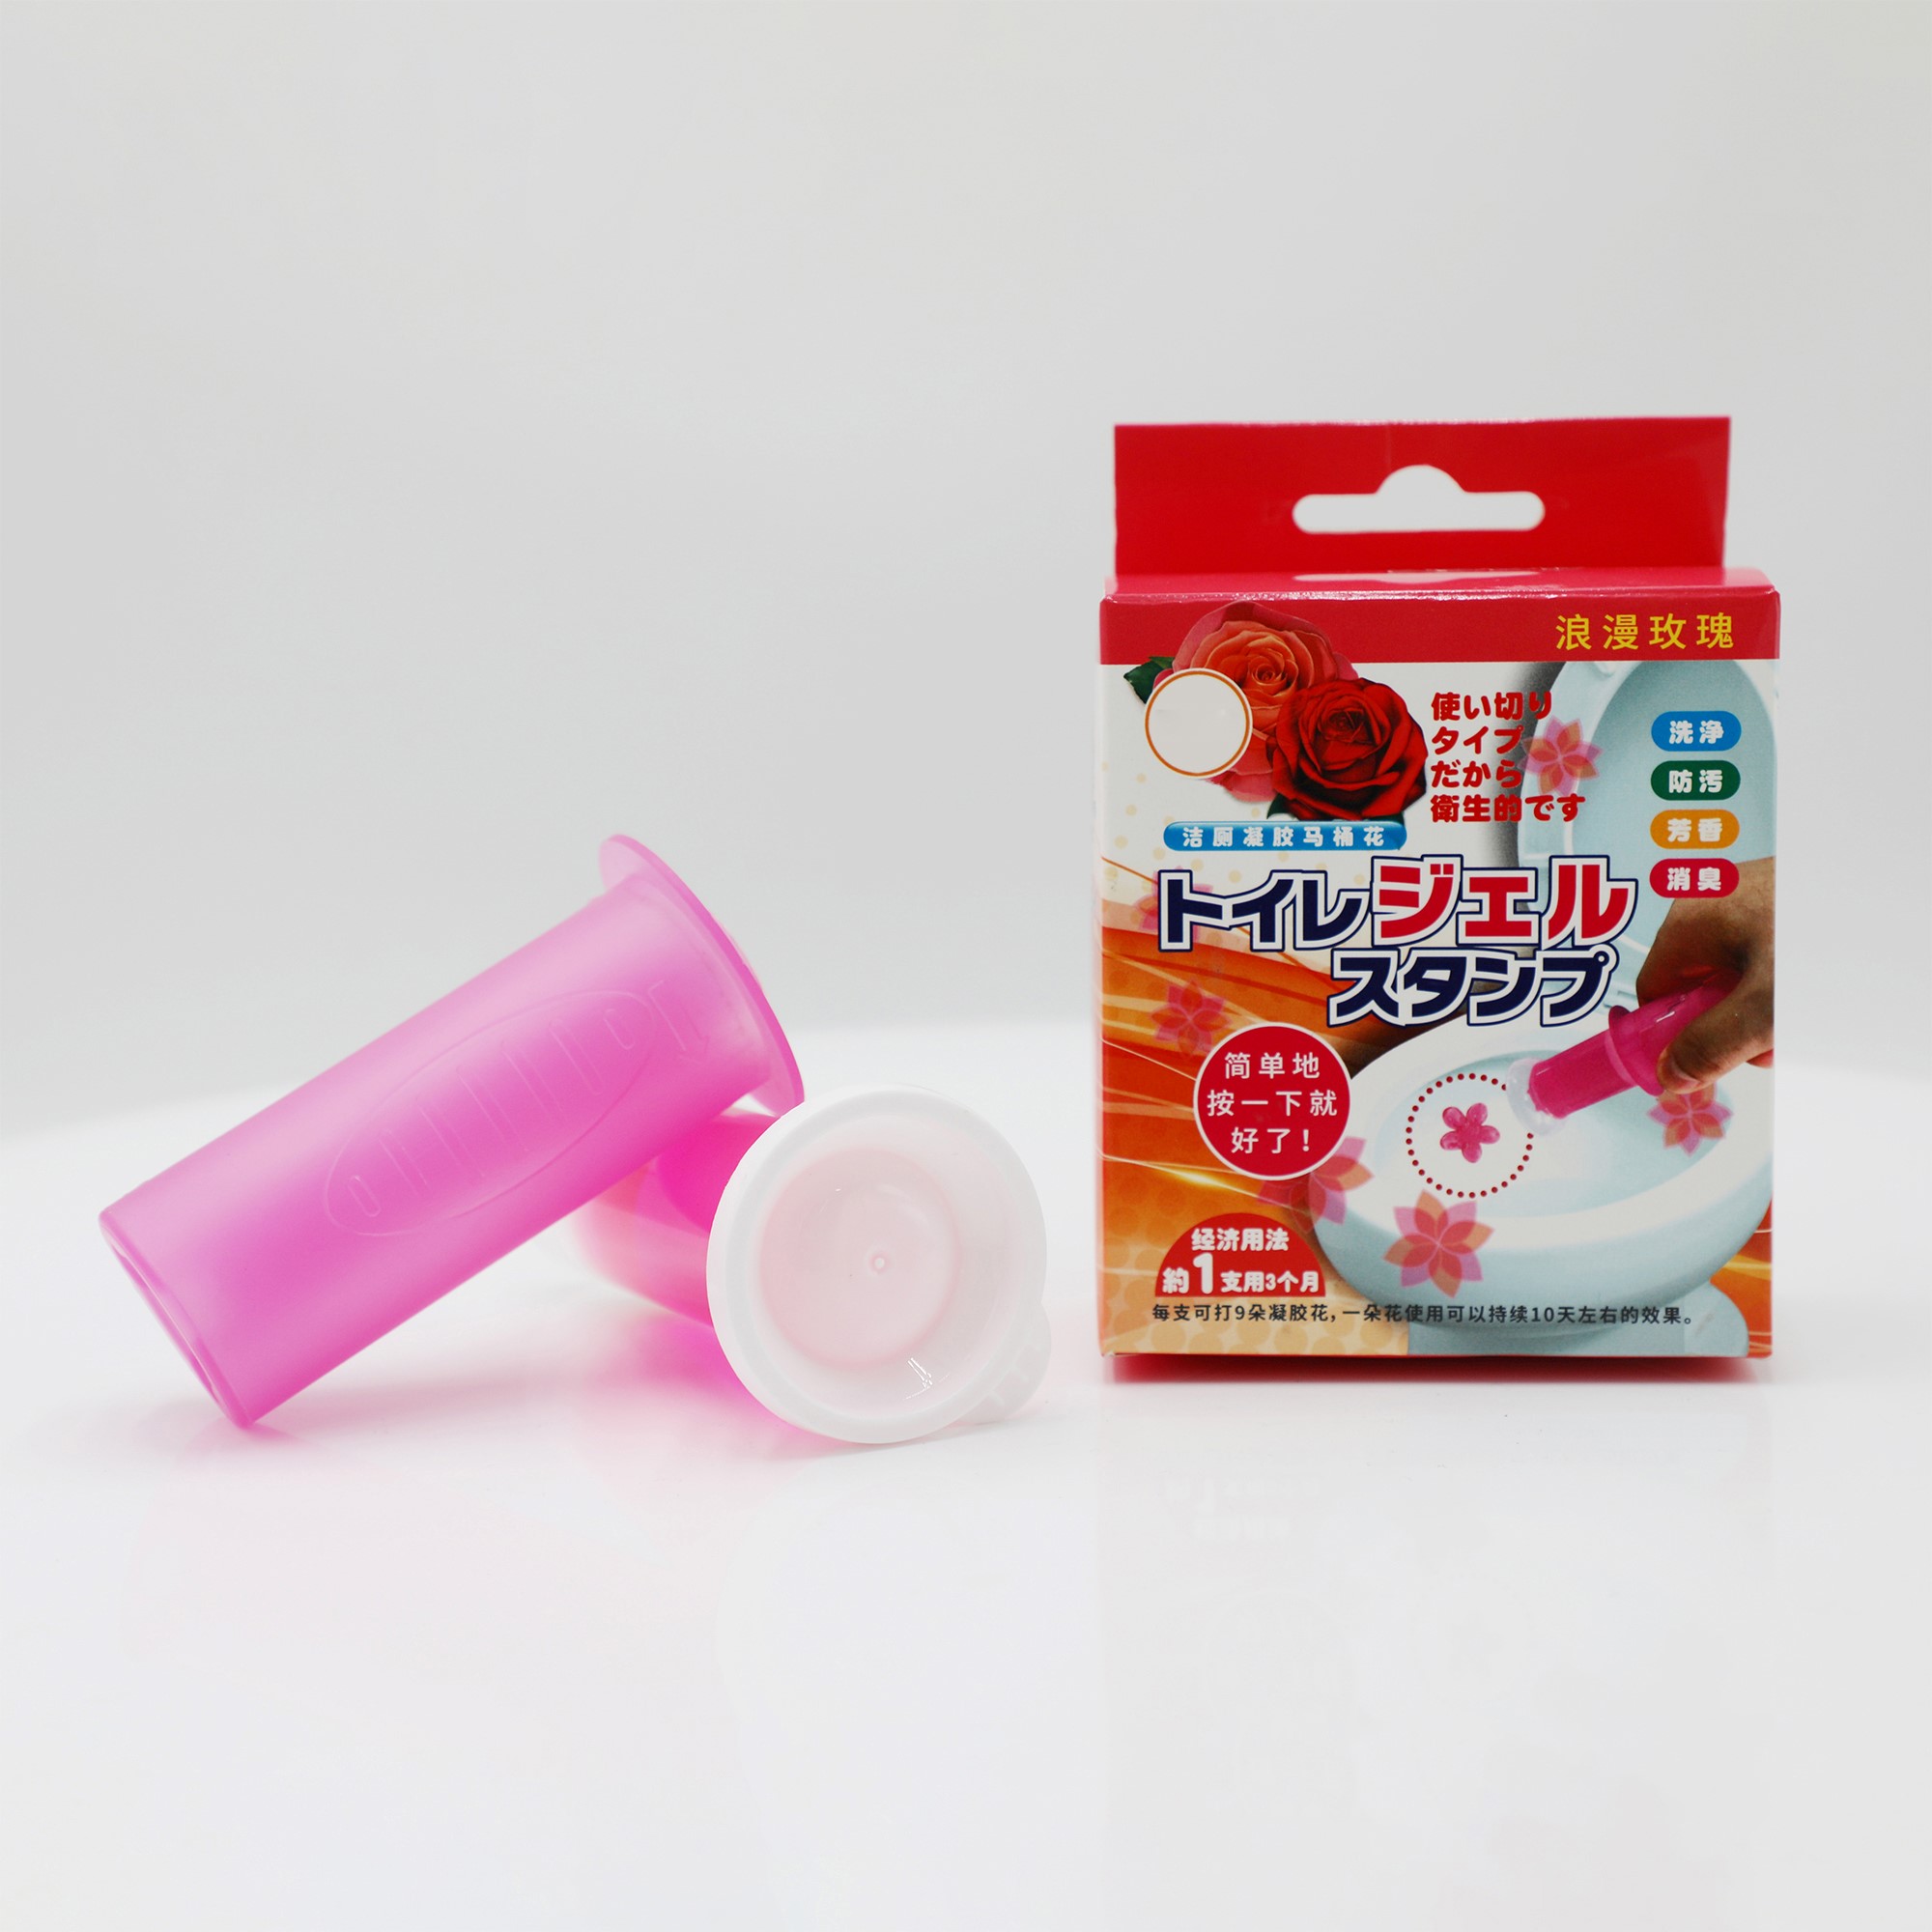 Plat de nettoyage de toilettes en plastique rose - Facile et efficace 1*40g